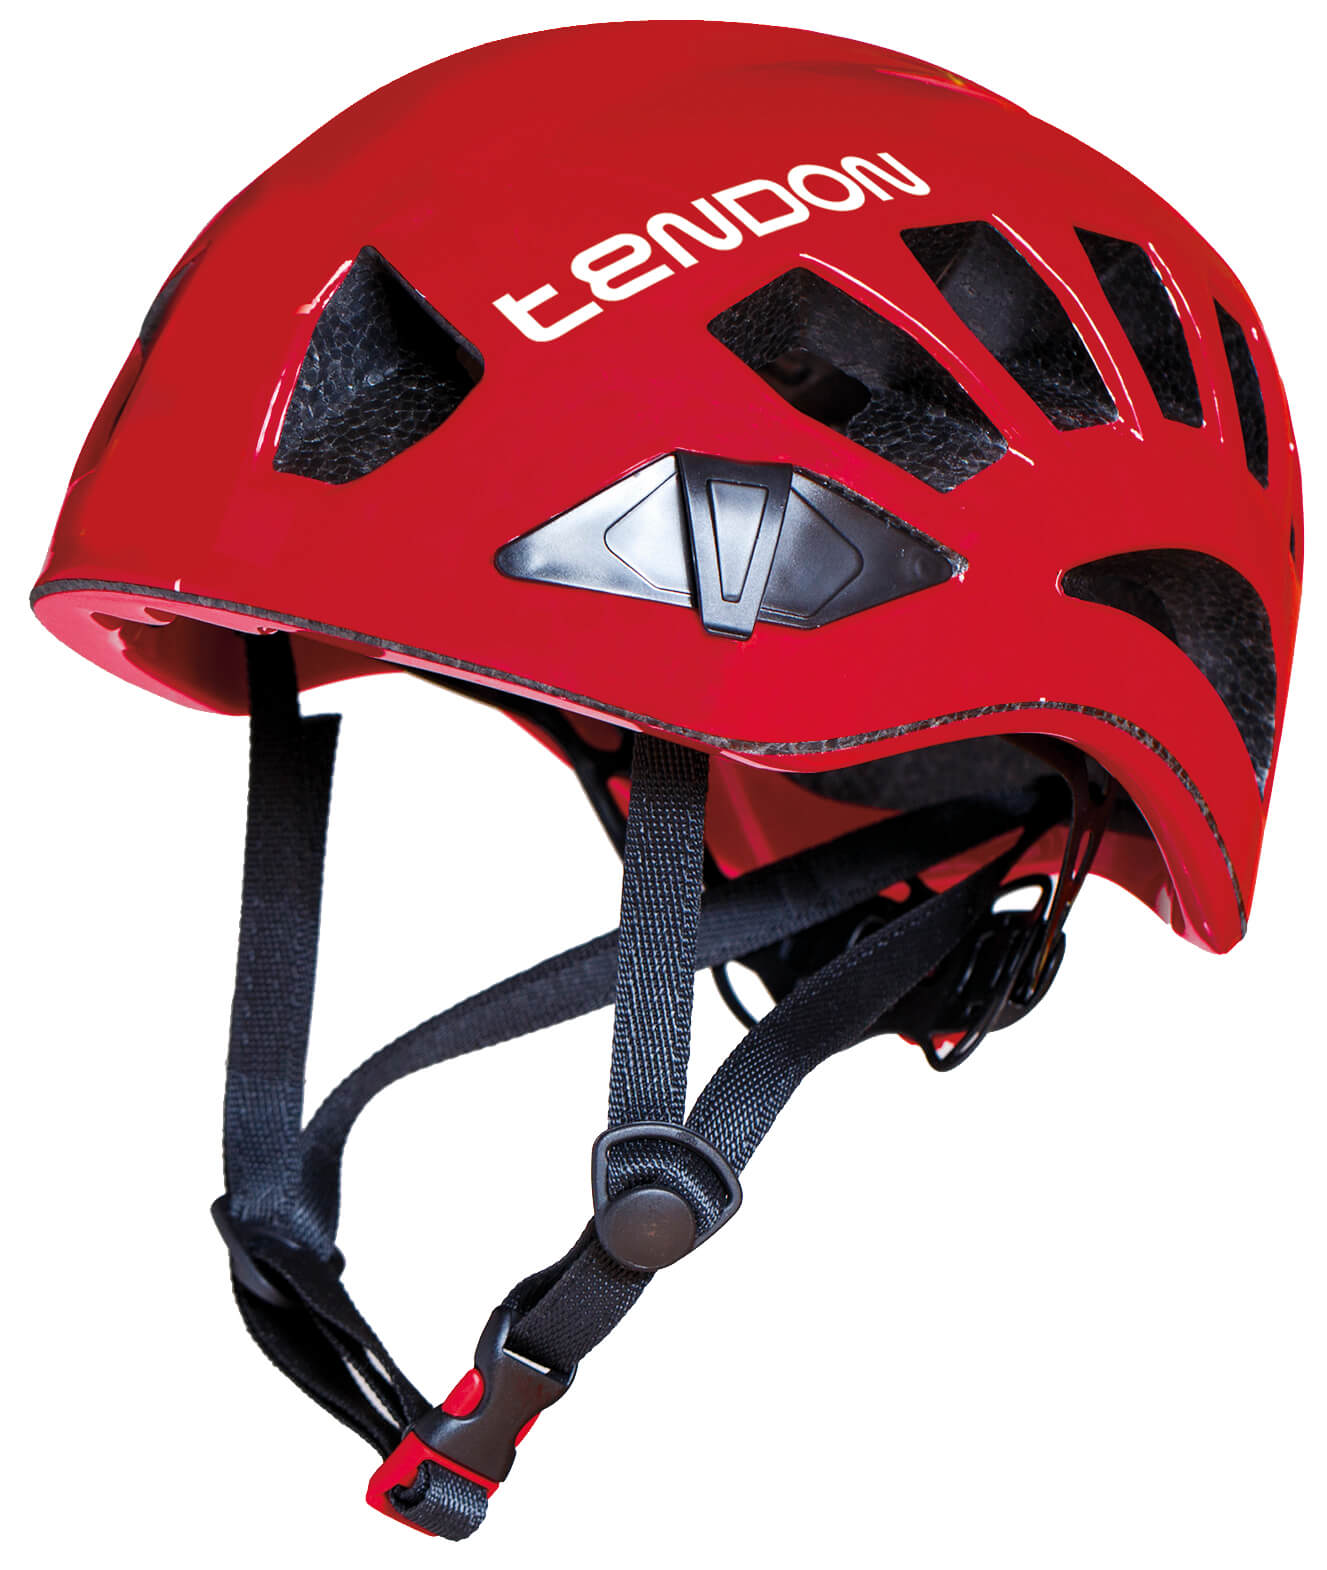 TENDON helma Orbix - rojo